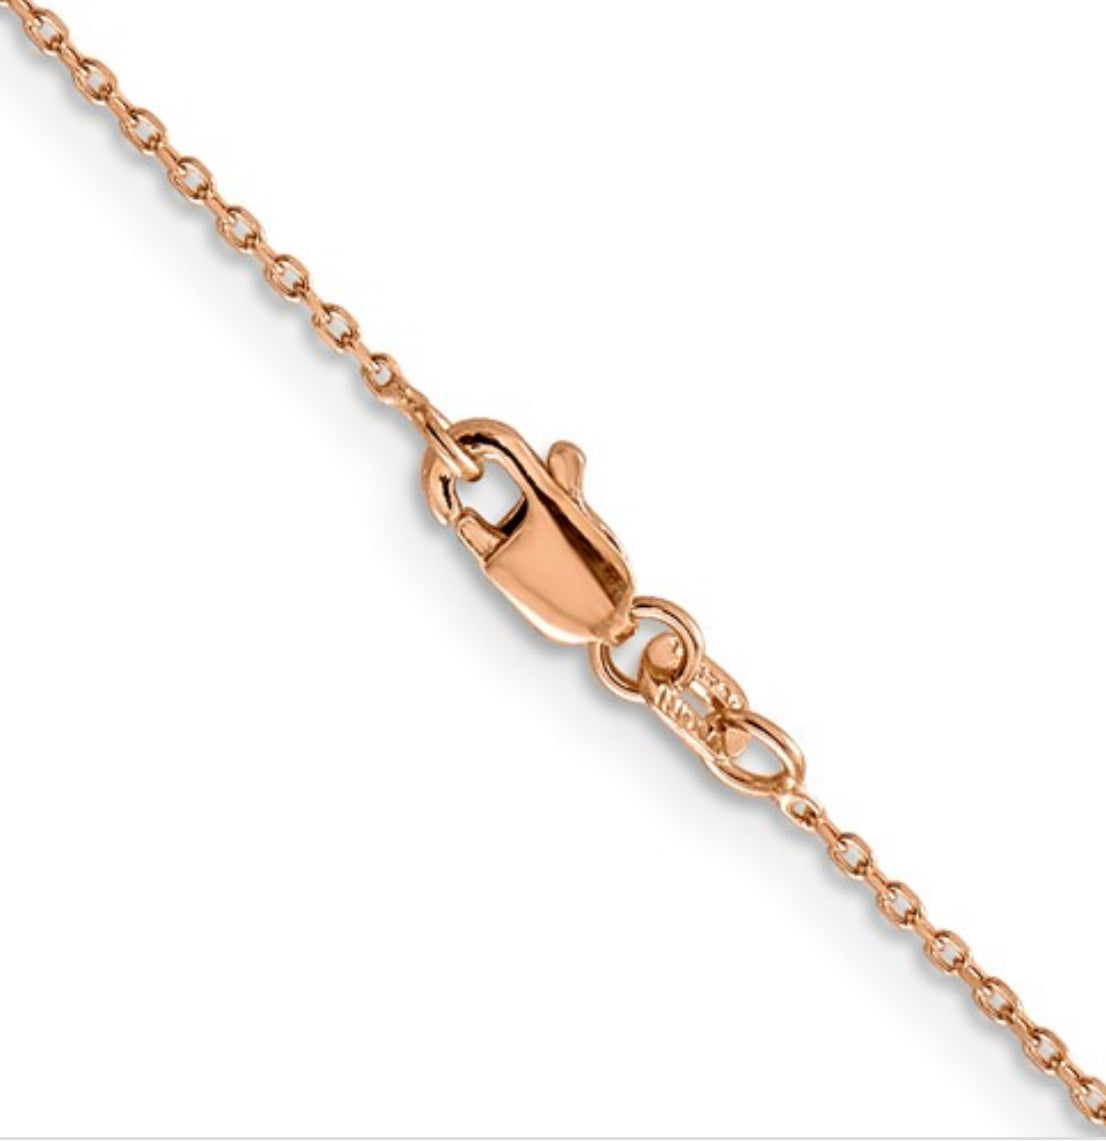 Cadena tipo cable de oro rosa de 14 quilates con corte de diamante y cierre de langosta - 1,00 mm - varias longitudes